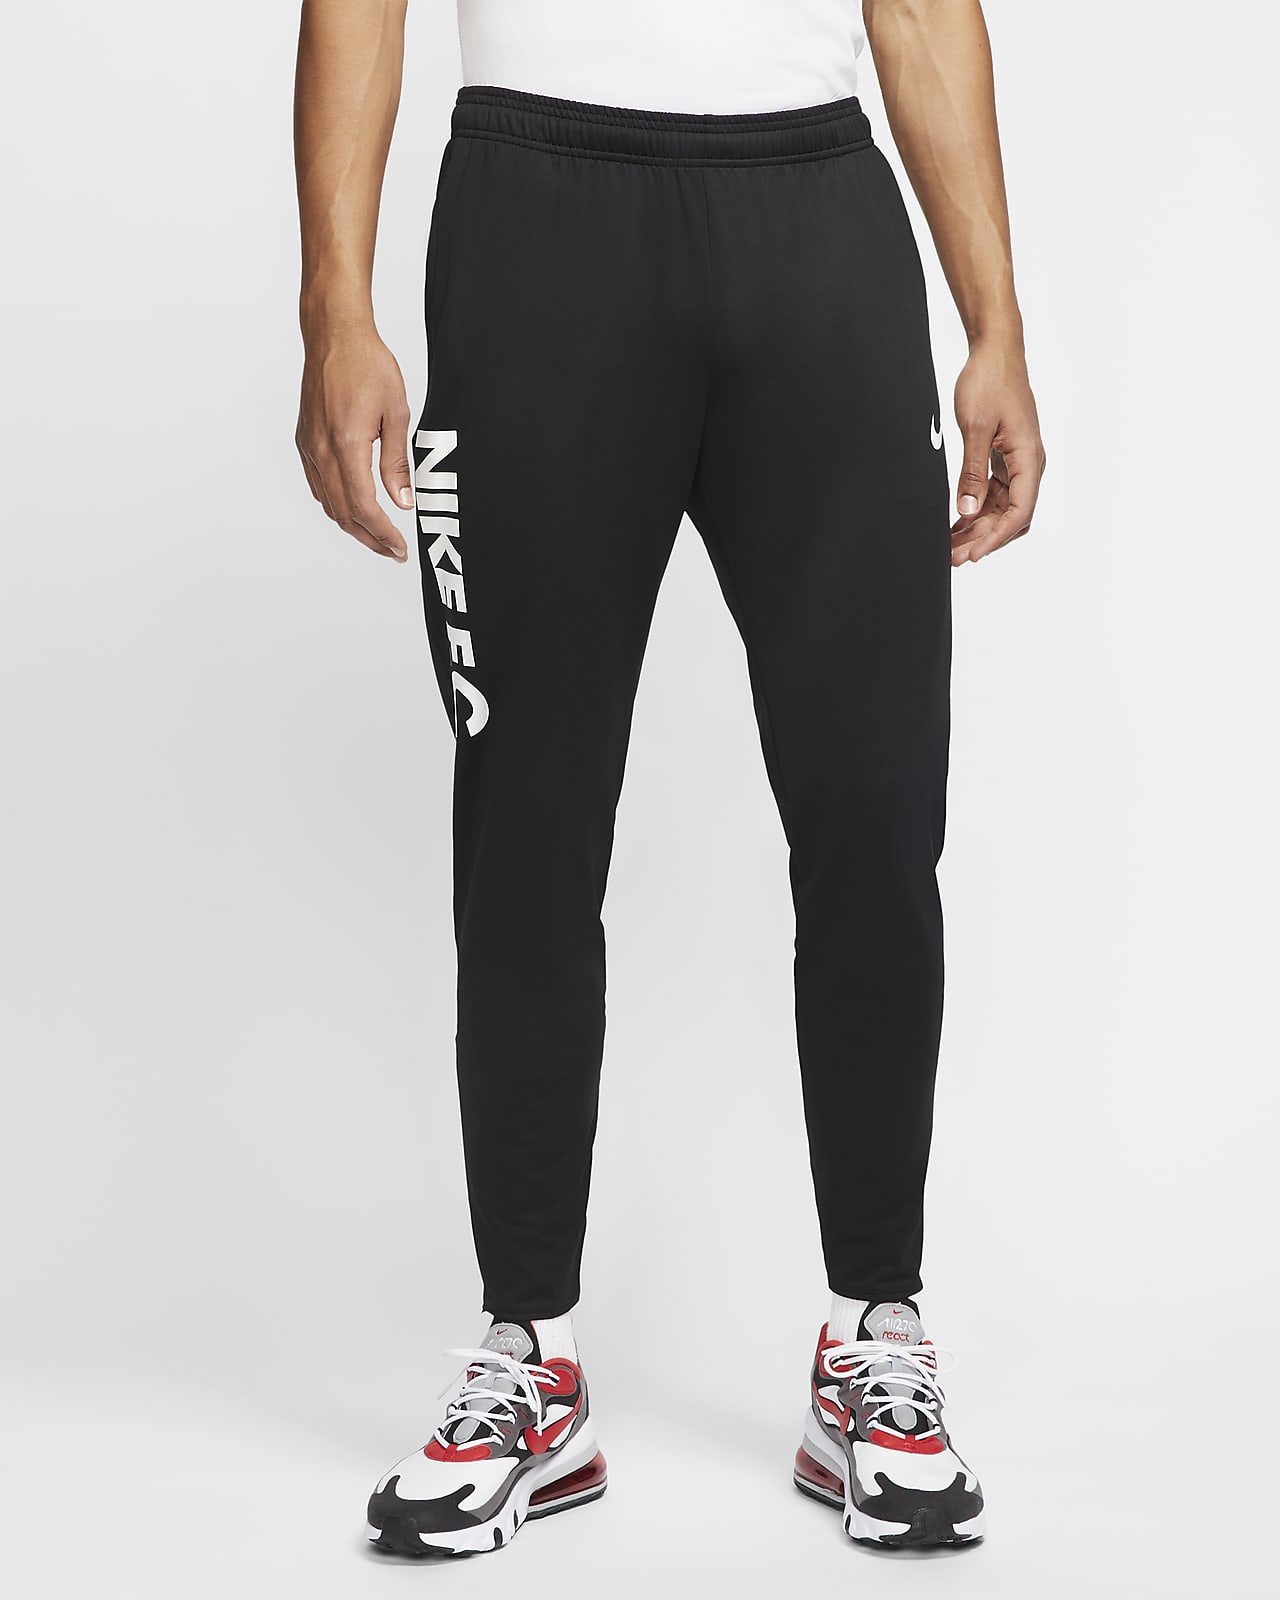 Pantalones de fútbol para hombre Nike F.C. Essential. Nike MX